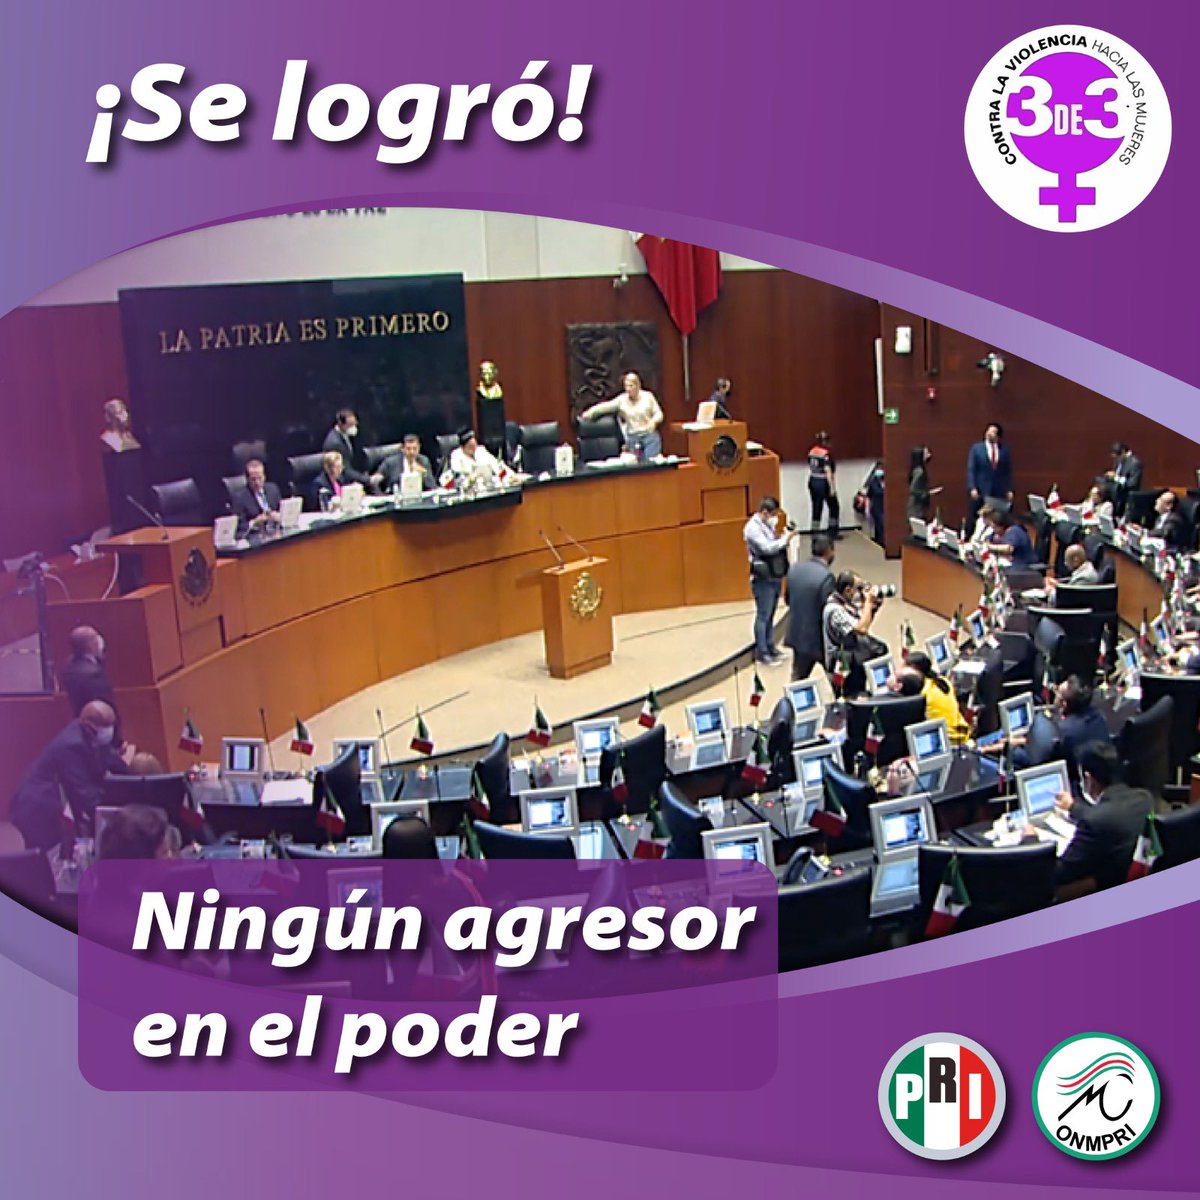 Desde #Tamaulipas celebramos que se logró la #3de3VsViolencia 
Hoy la Comisión Permanente declara que esta la ley tendrá validez en todo #MEXICO #NingúnAgresorEnElPoder 

@OnmpriNacional @PRITampsOficial @PRI_Nacional @caroviggiano @MonseArcosV @SoyBlancaAlcala @LasConstiMX